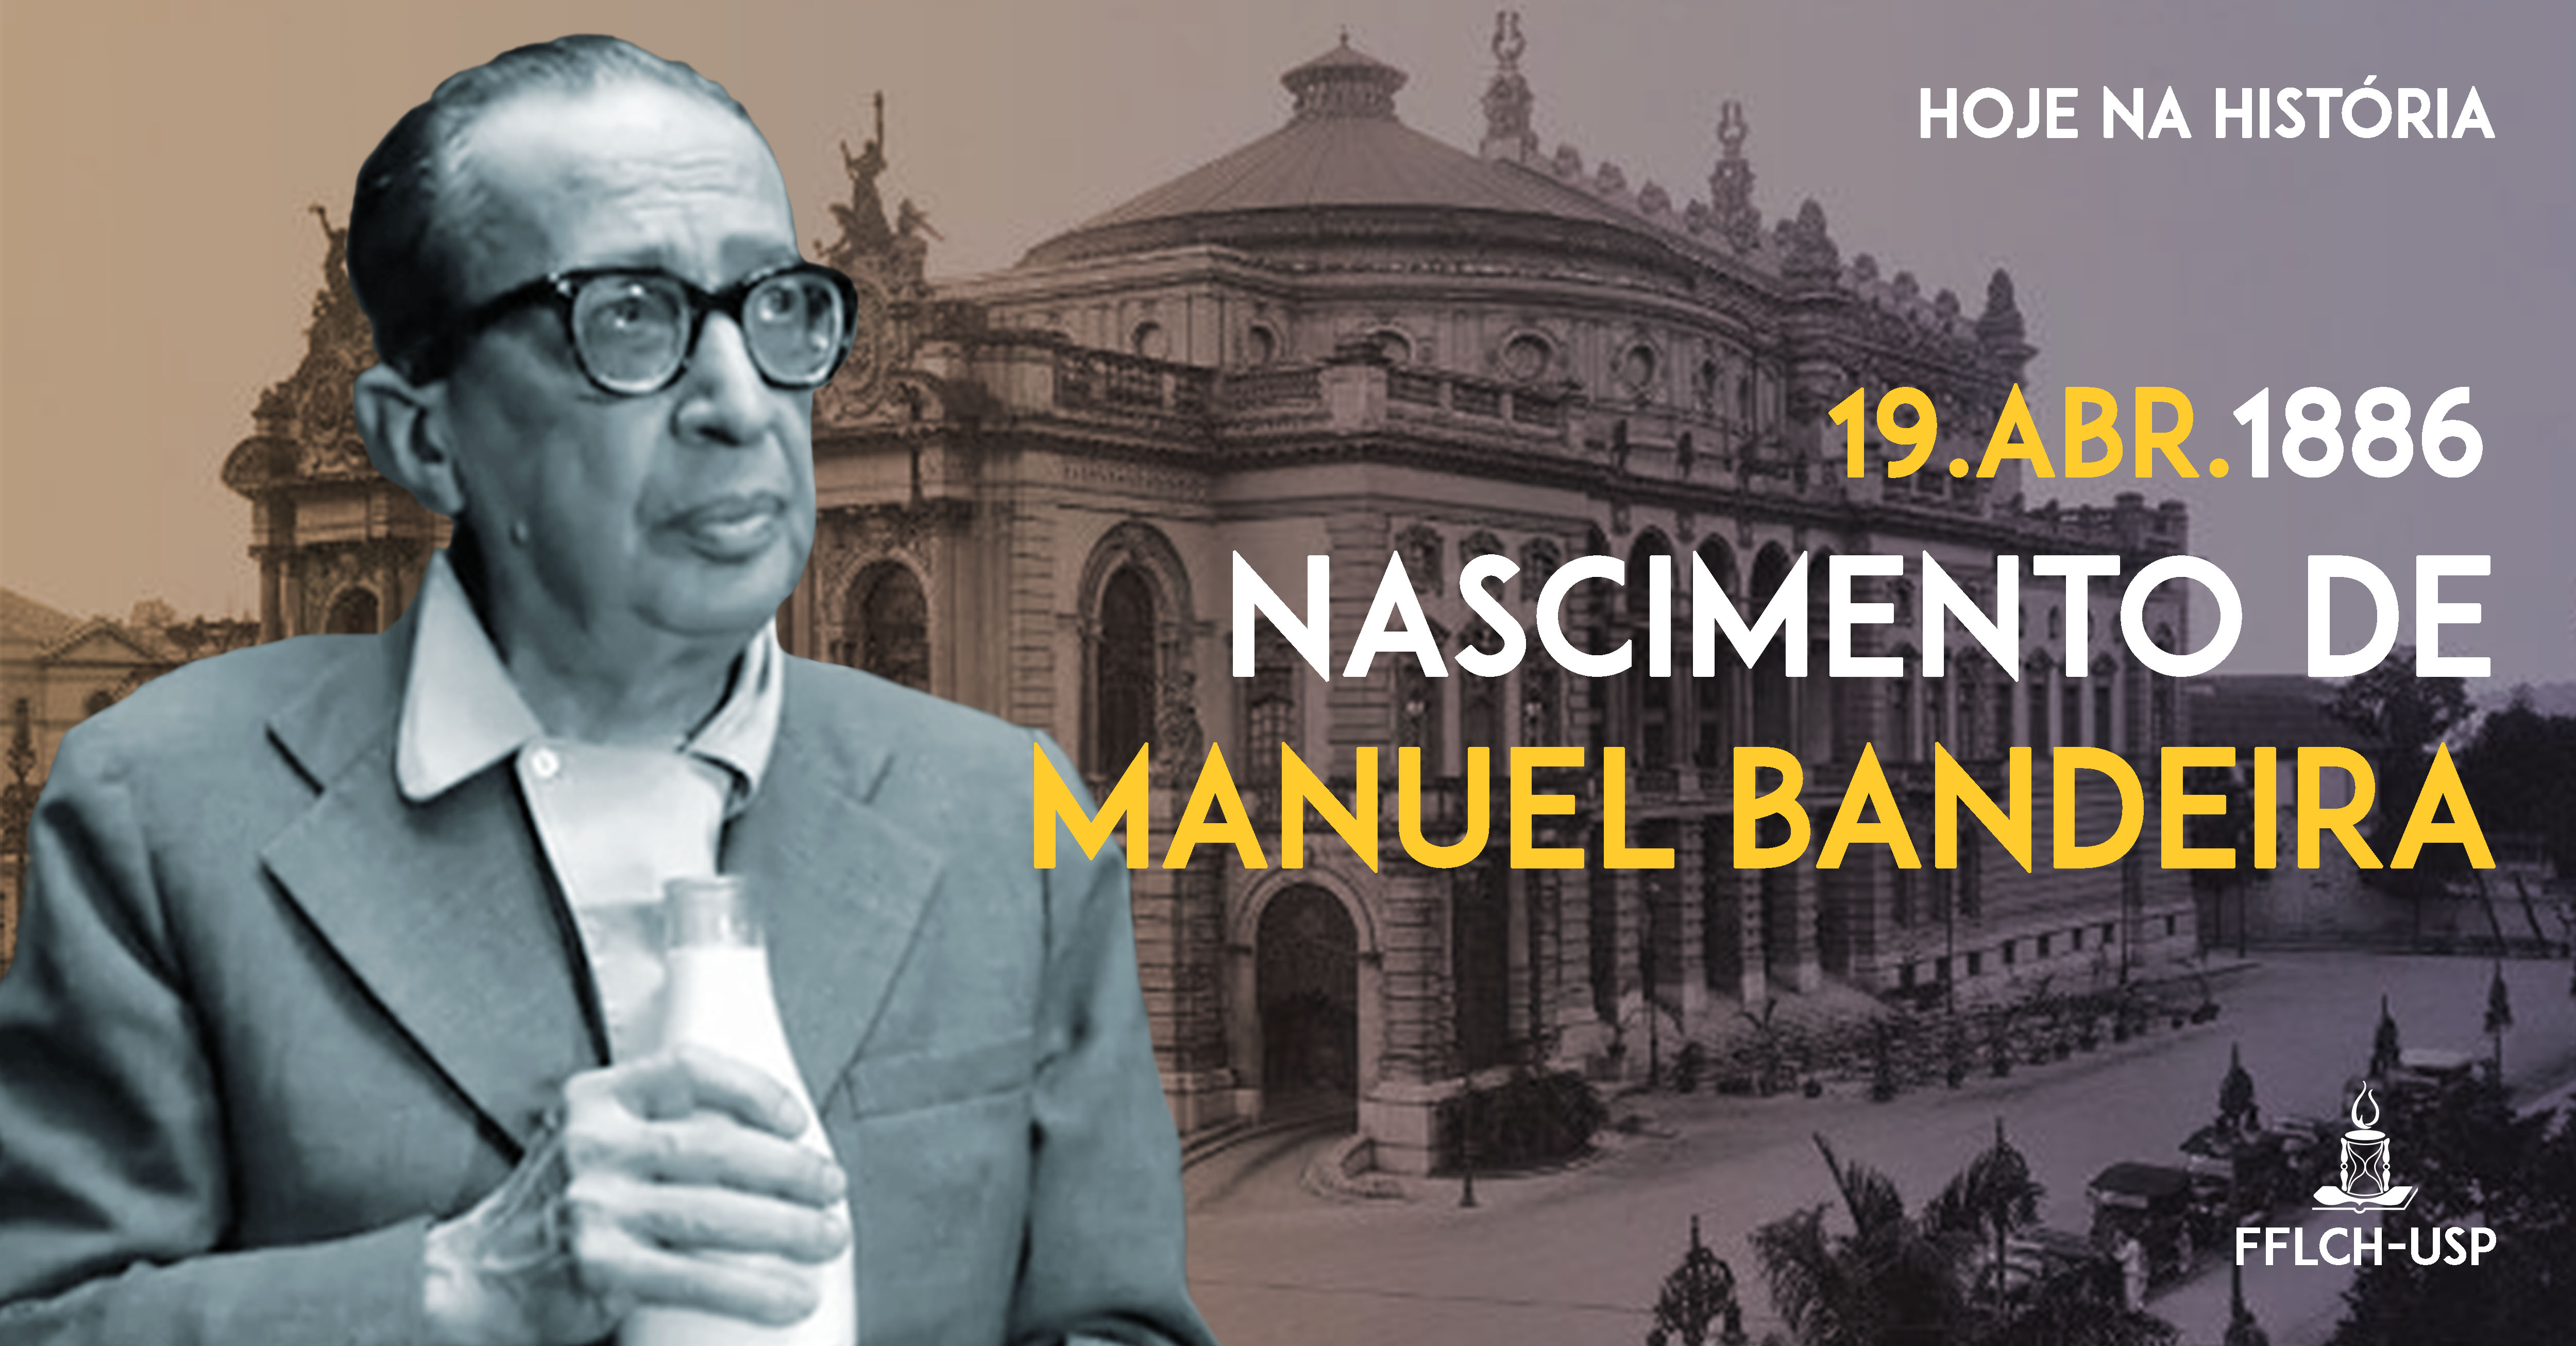 Hoje na História: Nascimento de Manuel Bandeira no dia 19 de abril de 1886